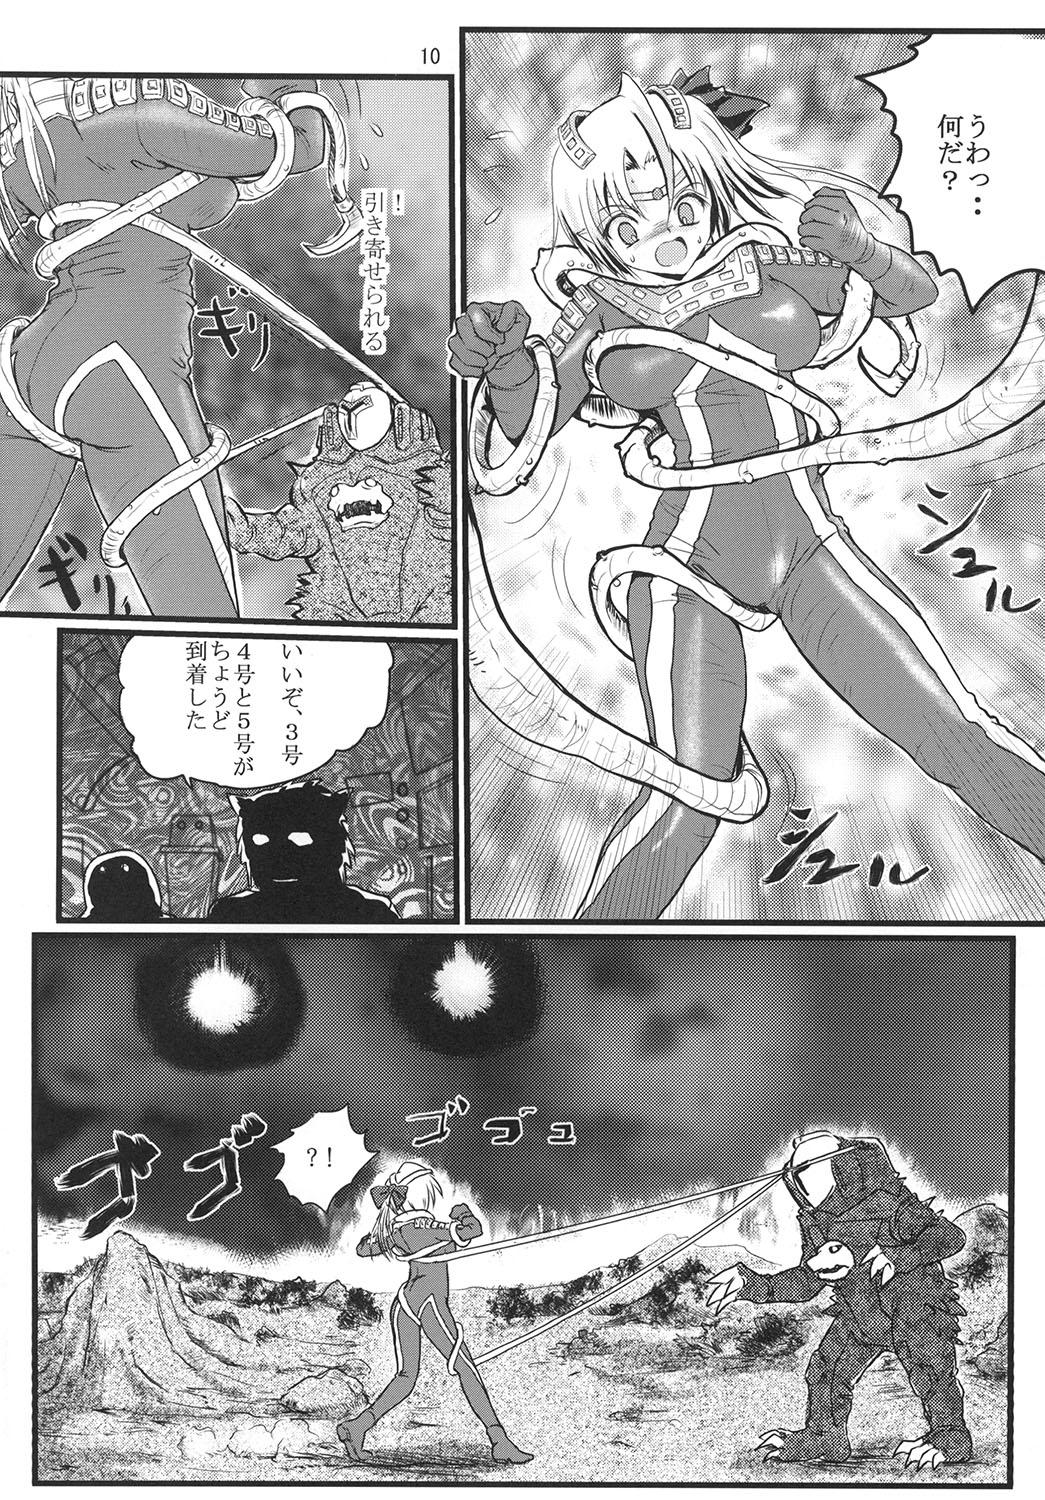 Blowjob Ultra Nanako Zettaizetsumei! - Ultraman Gay - Page 10